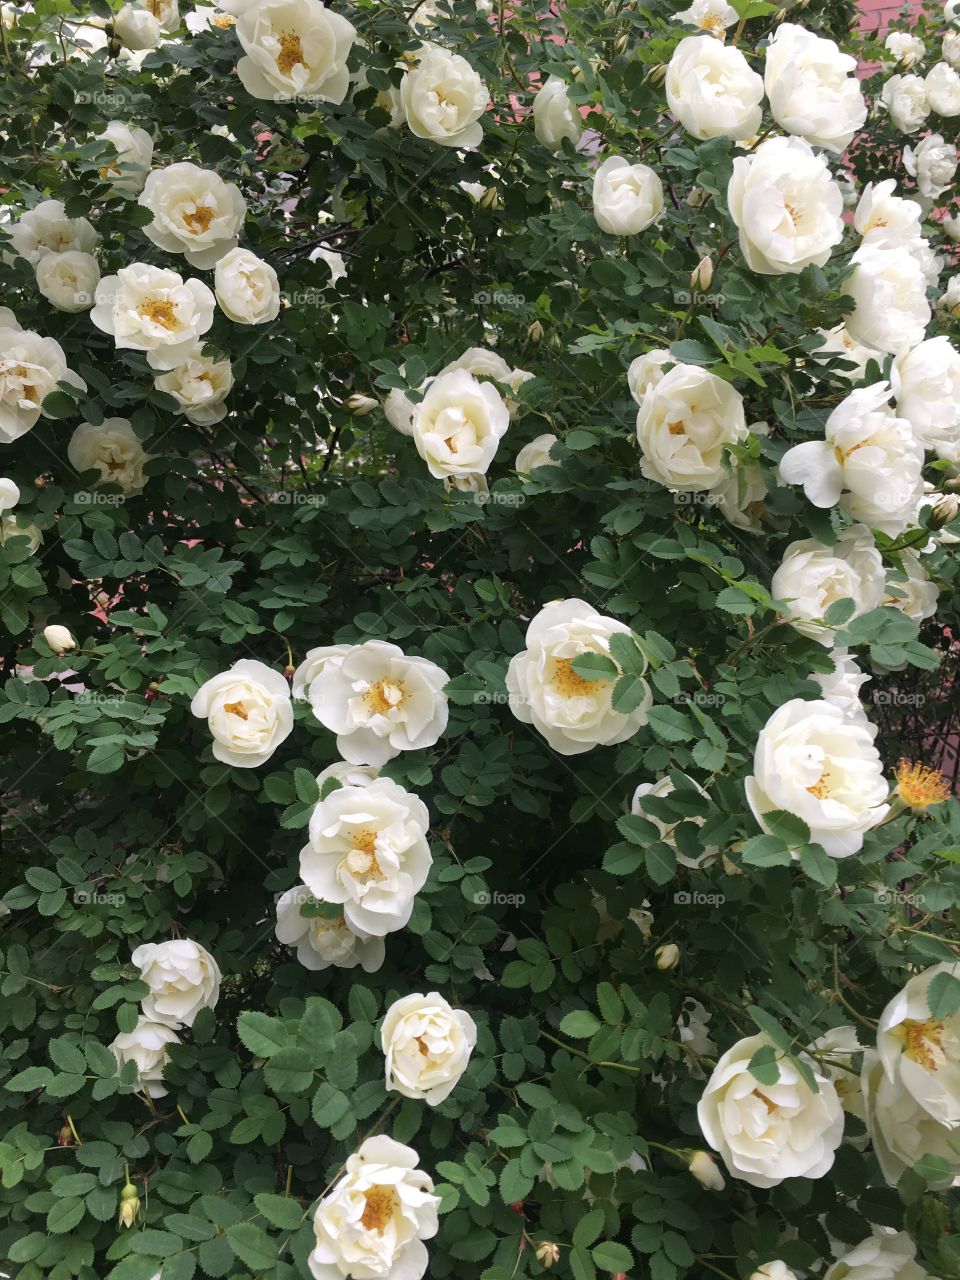 White roses on the bush. 